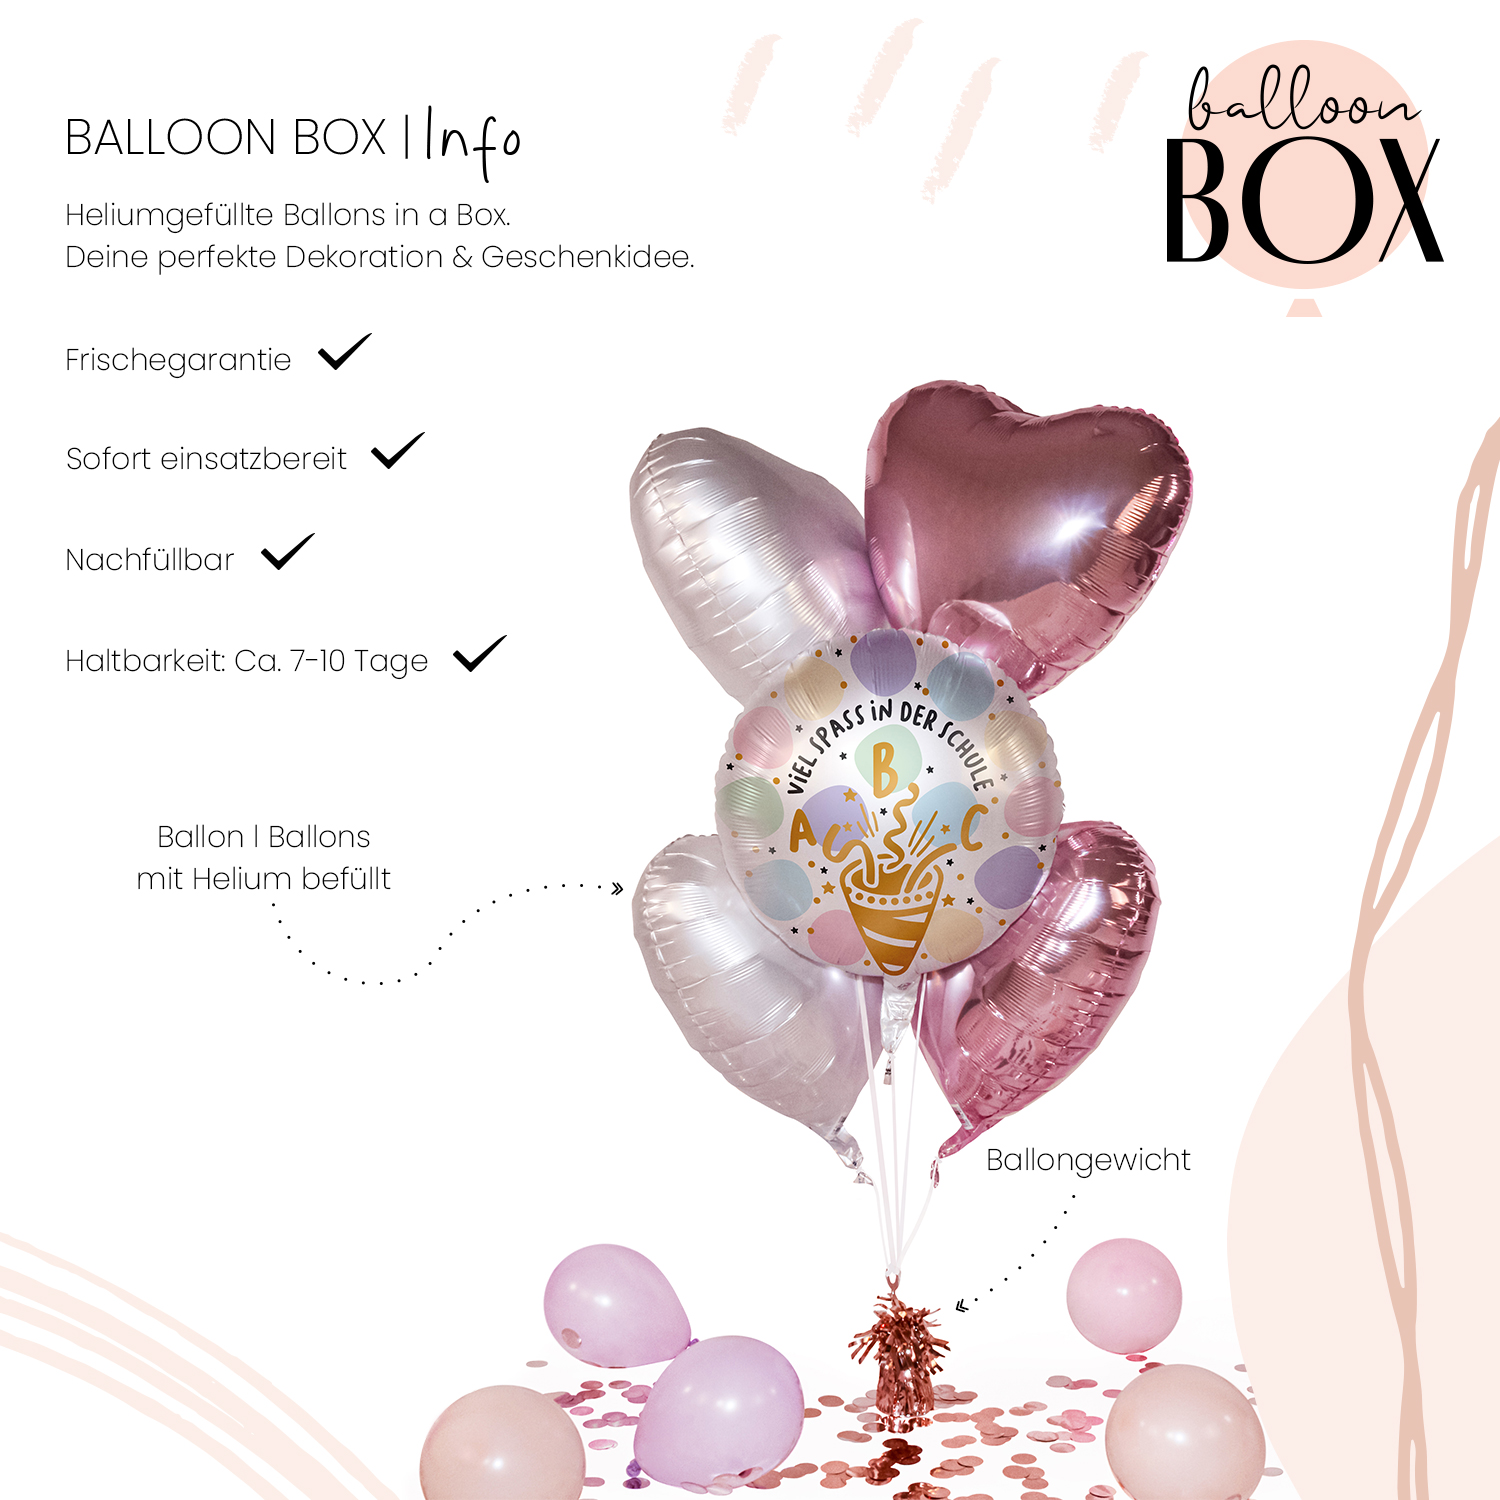 Heliumballon in a Box - Viel Spaß Schultüte